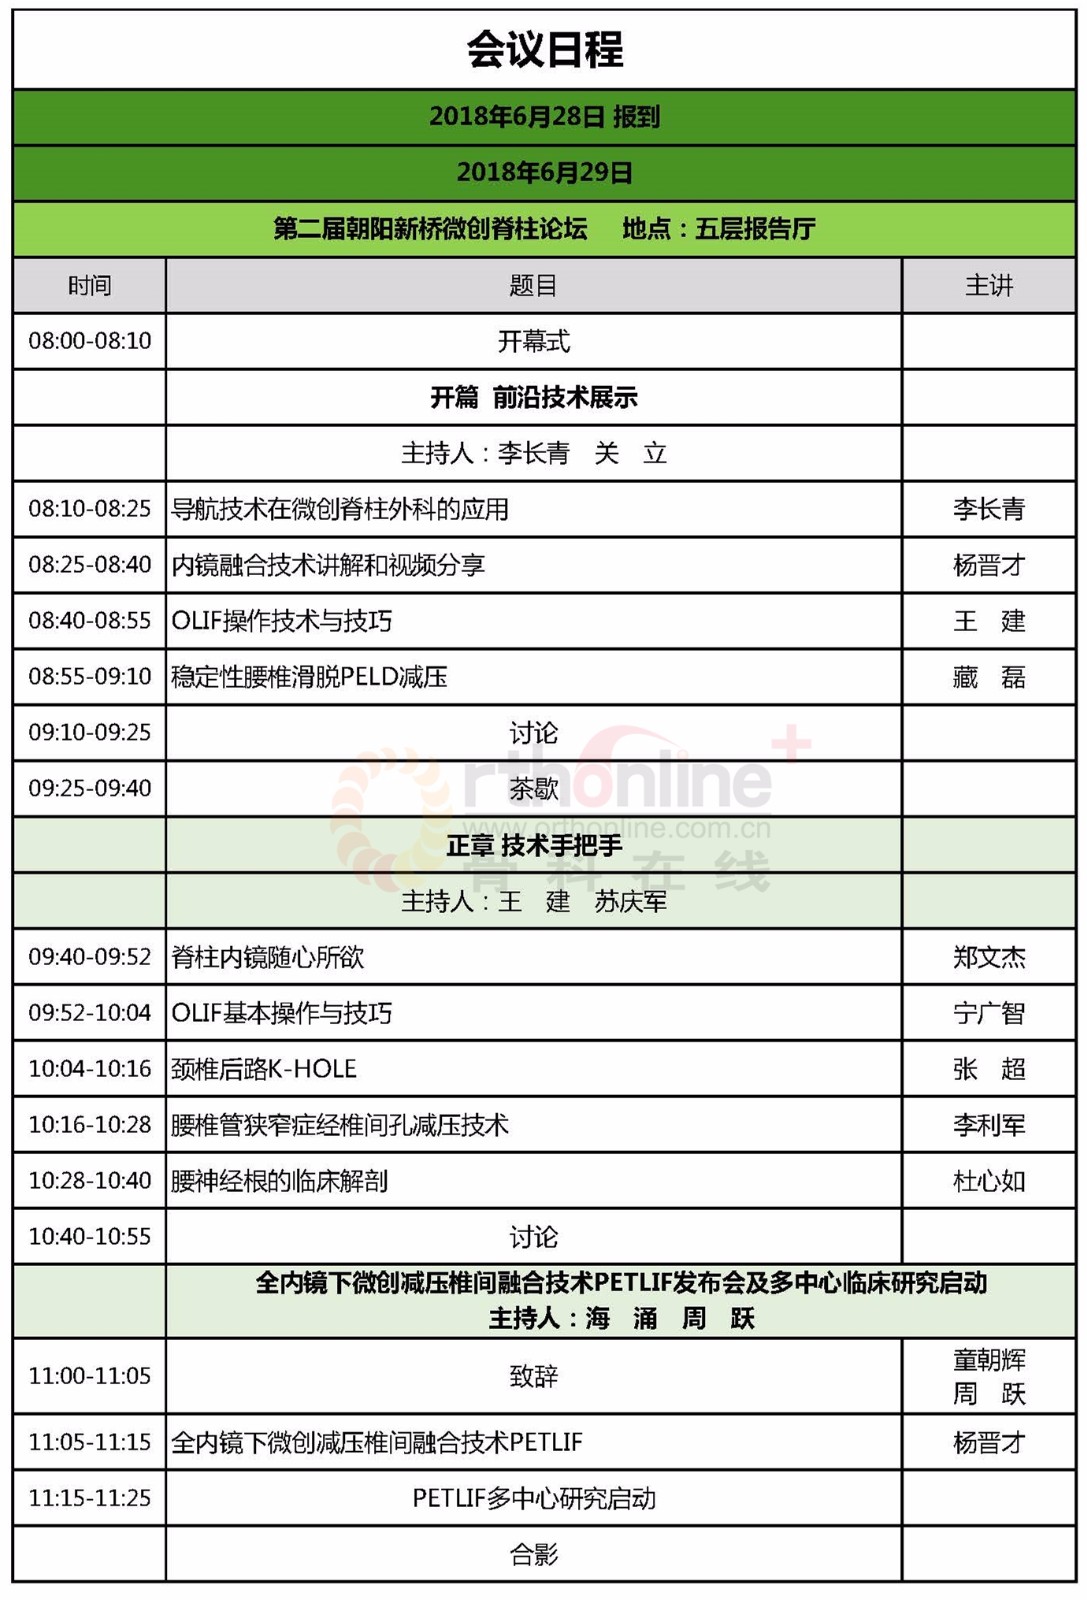 中文--第六届首都骨科高峰论坛初步议程V5－2018-06-12AM(1)_页面_1.jpg